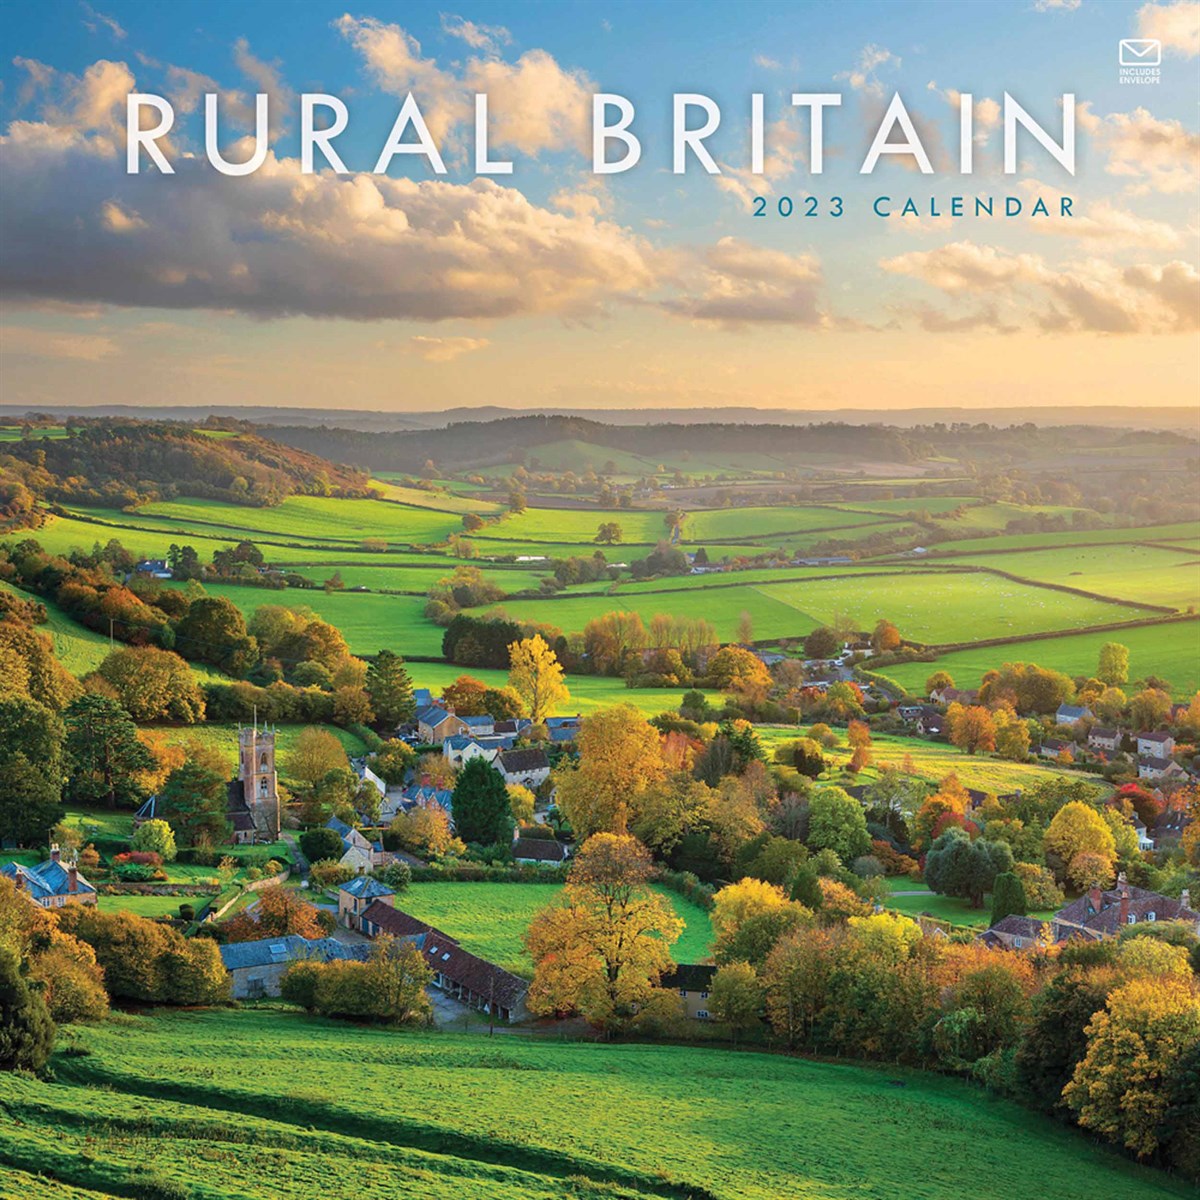 Rural Britain 2023 Calendars